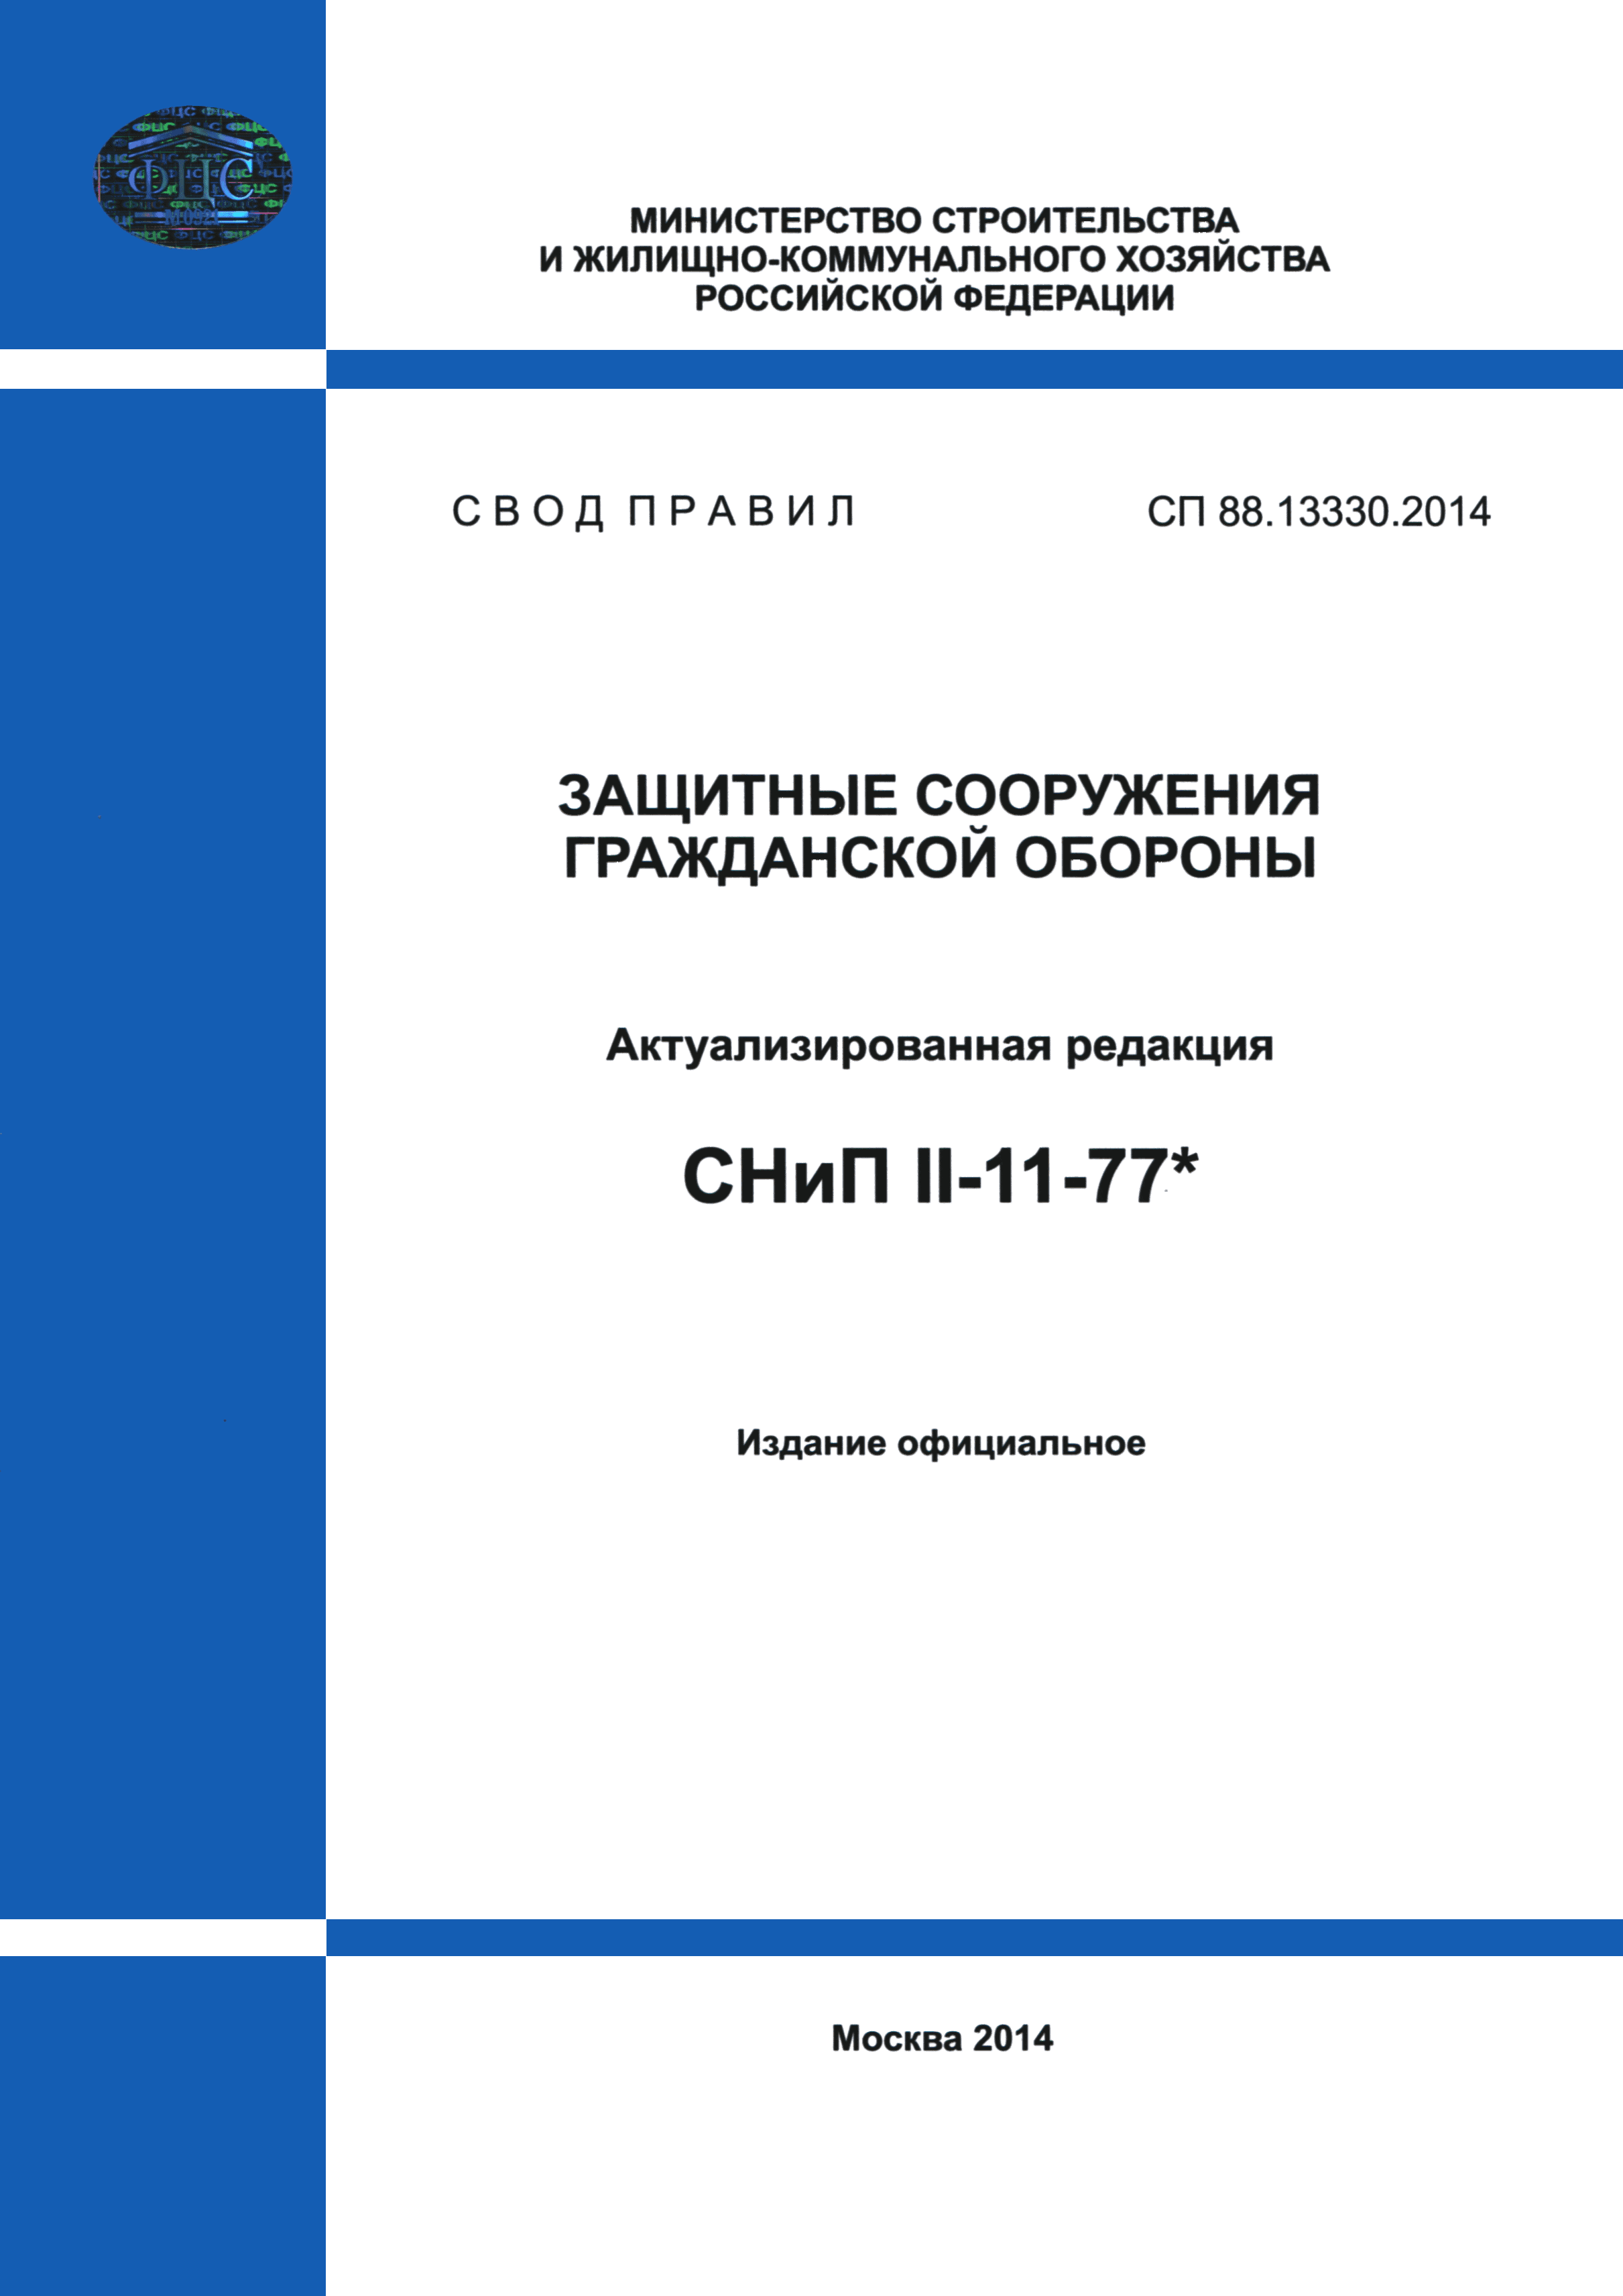 СП 88.13330.2014